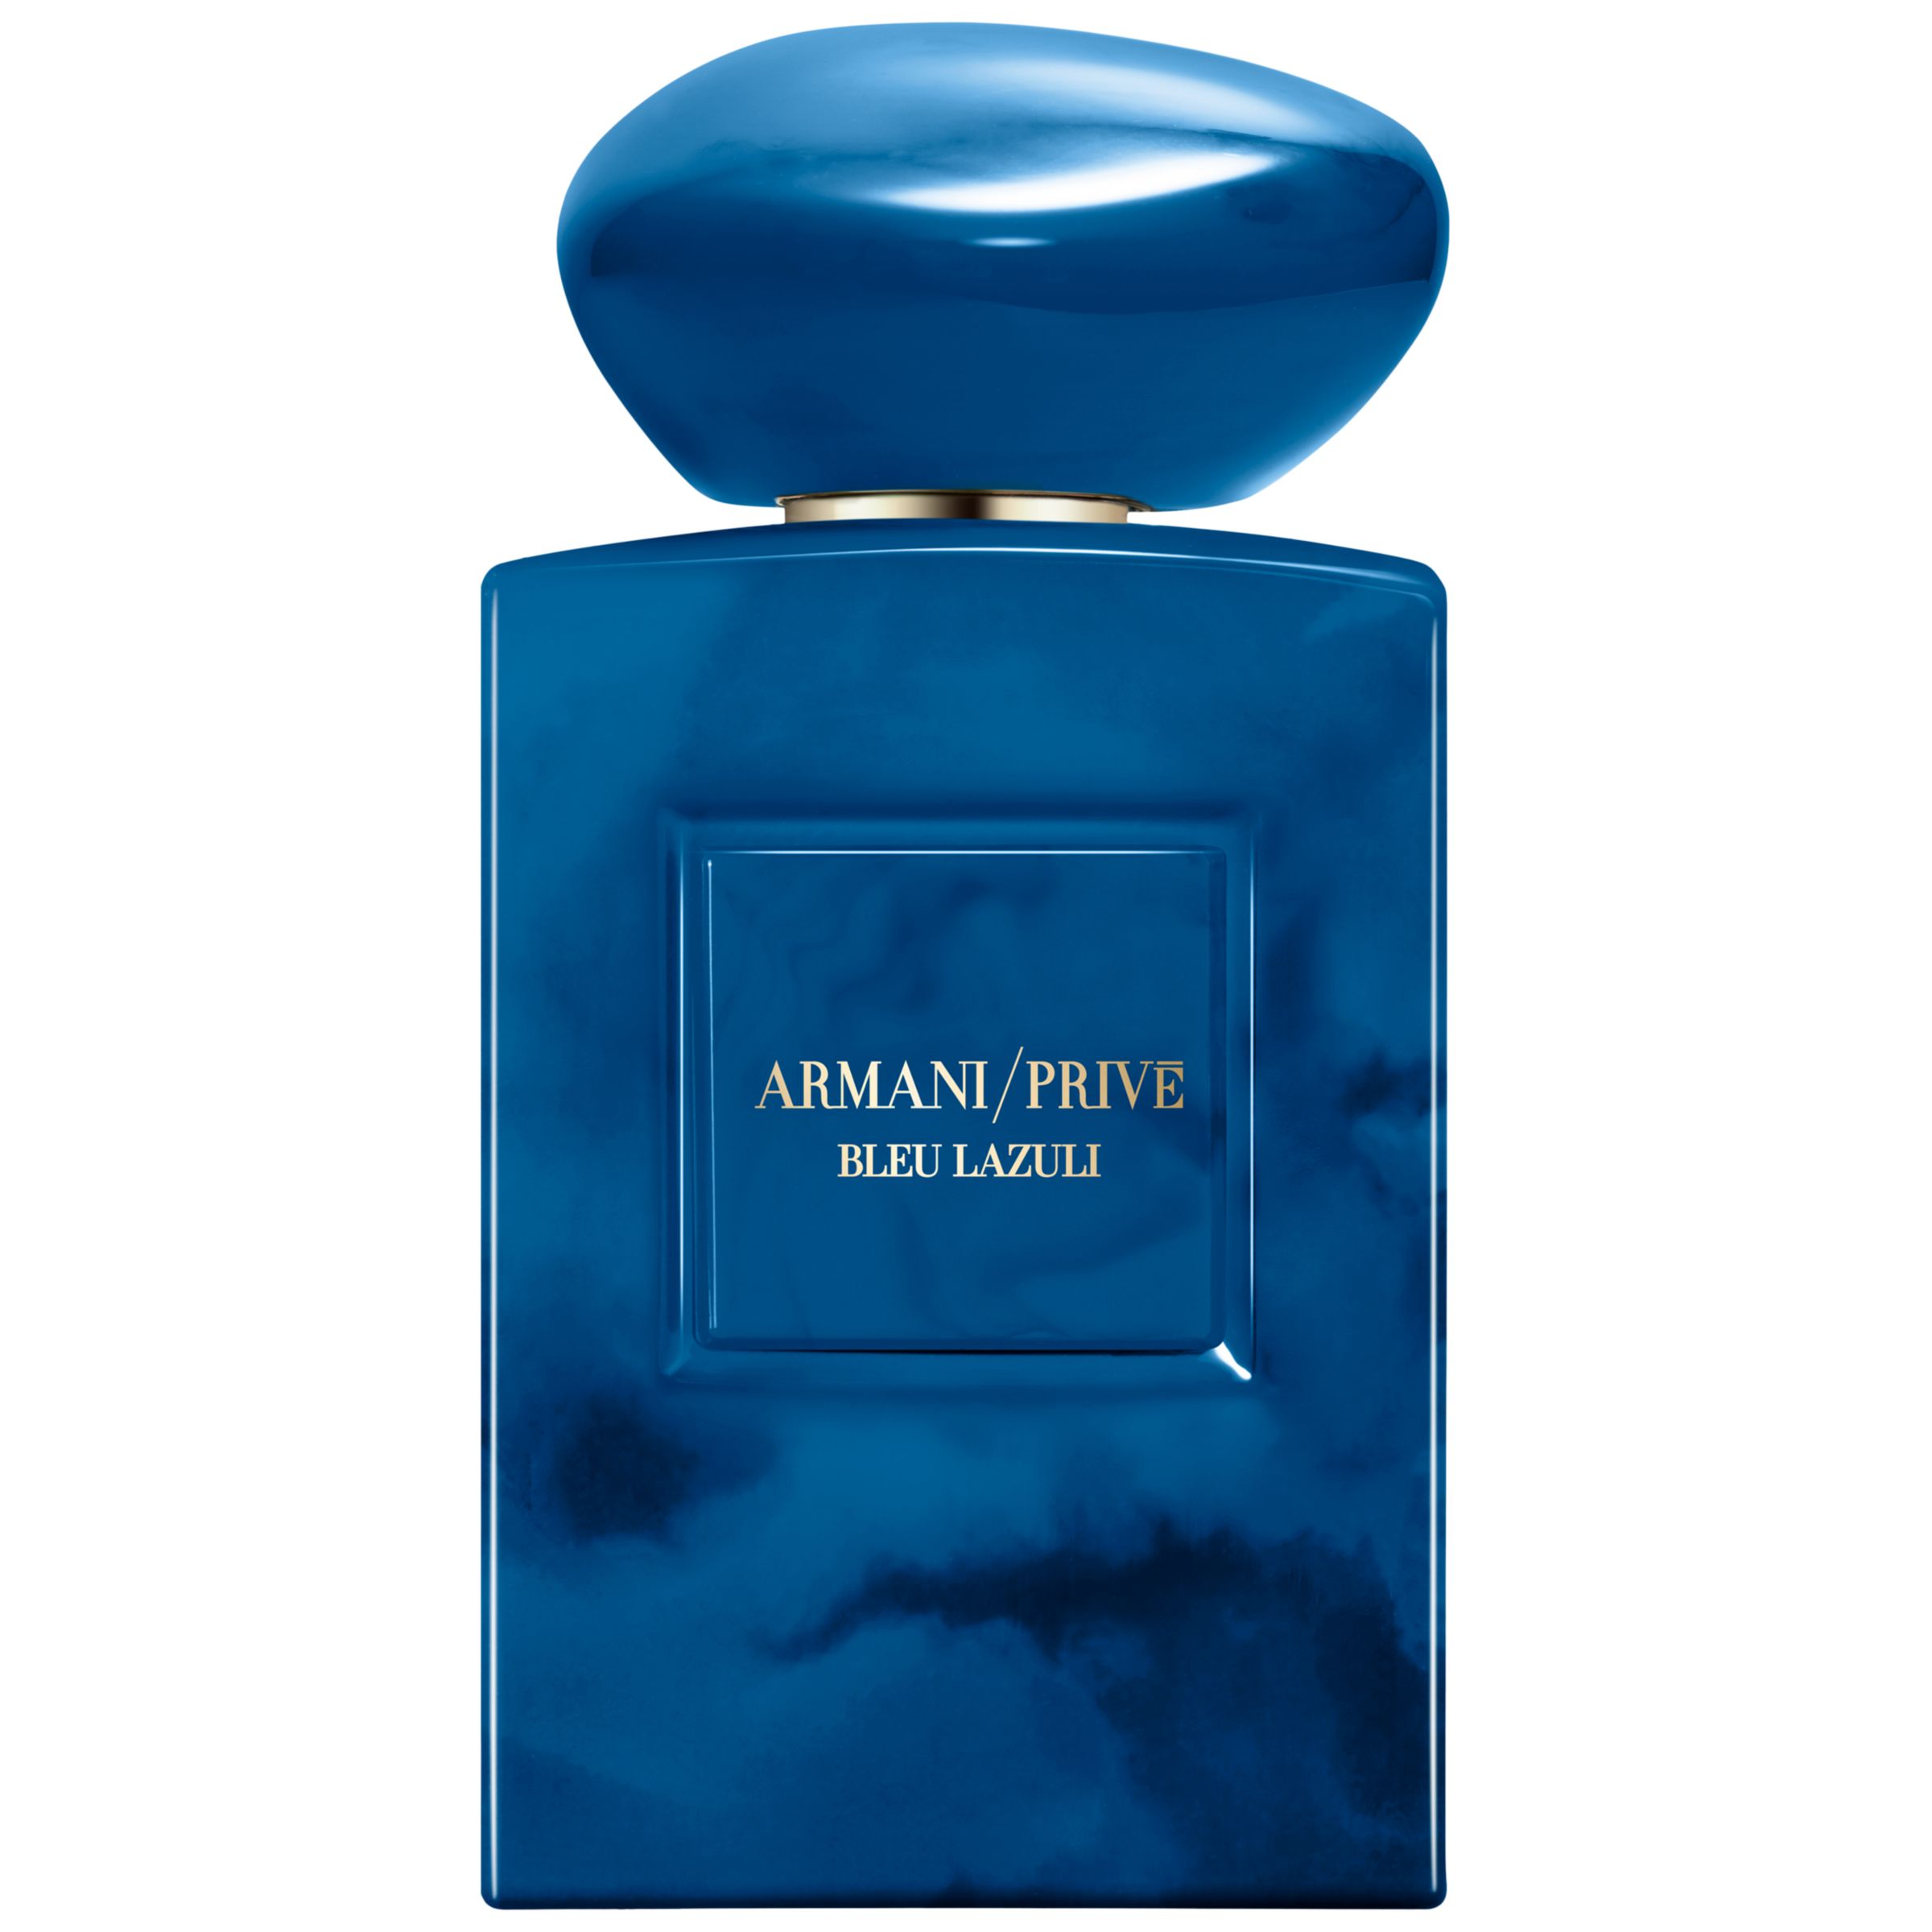 Giorgio Armani / Privé Bleu Lazuli Eau de Parfum, 100ml 1